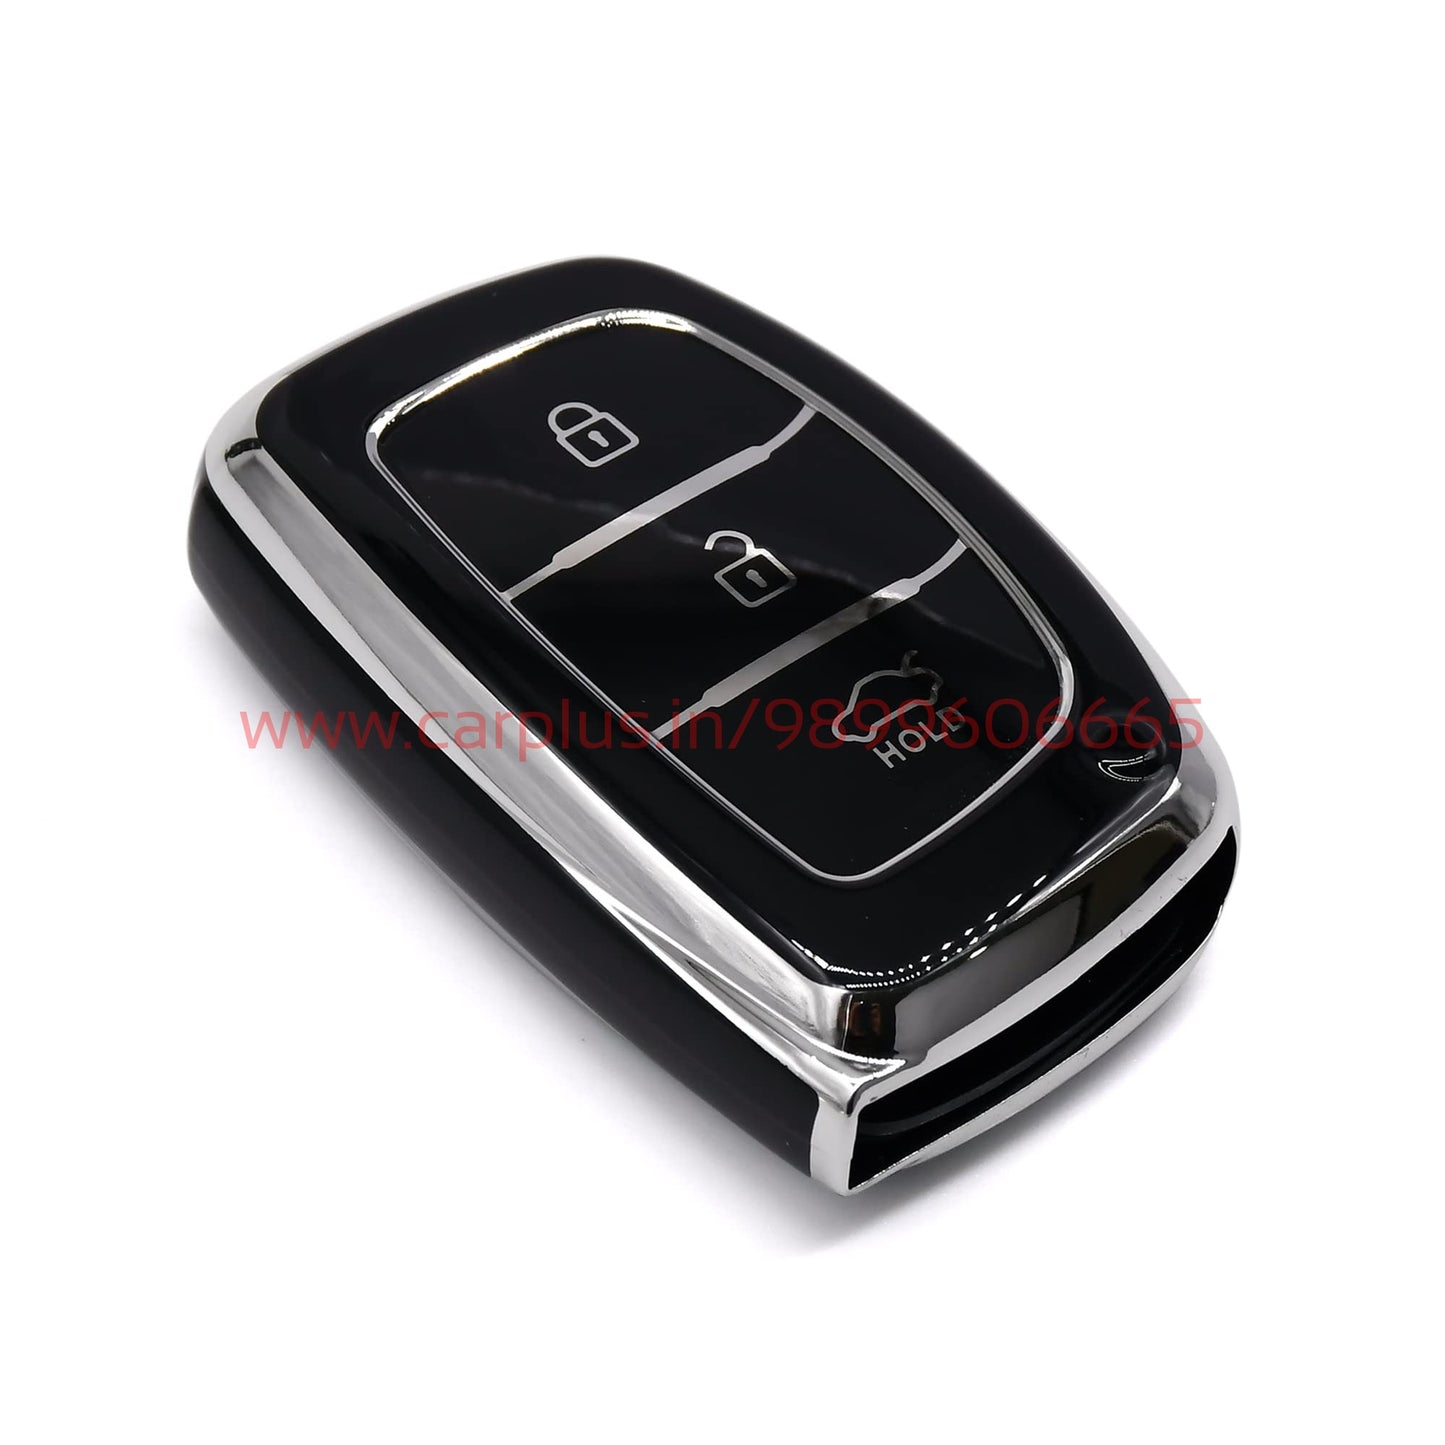 
                  
                    KMH - TPU Siiver Car Key Cover Compatible Hyundai Grand i10 NIOS Asta | Venue | i20 | Aura | Creta | Elantra 3 Button Smart Key Cover-TPU SILVER KEY COVER-KMH-KEY COVER-BLACK-CARPLUS
                  
                